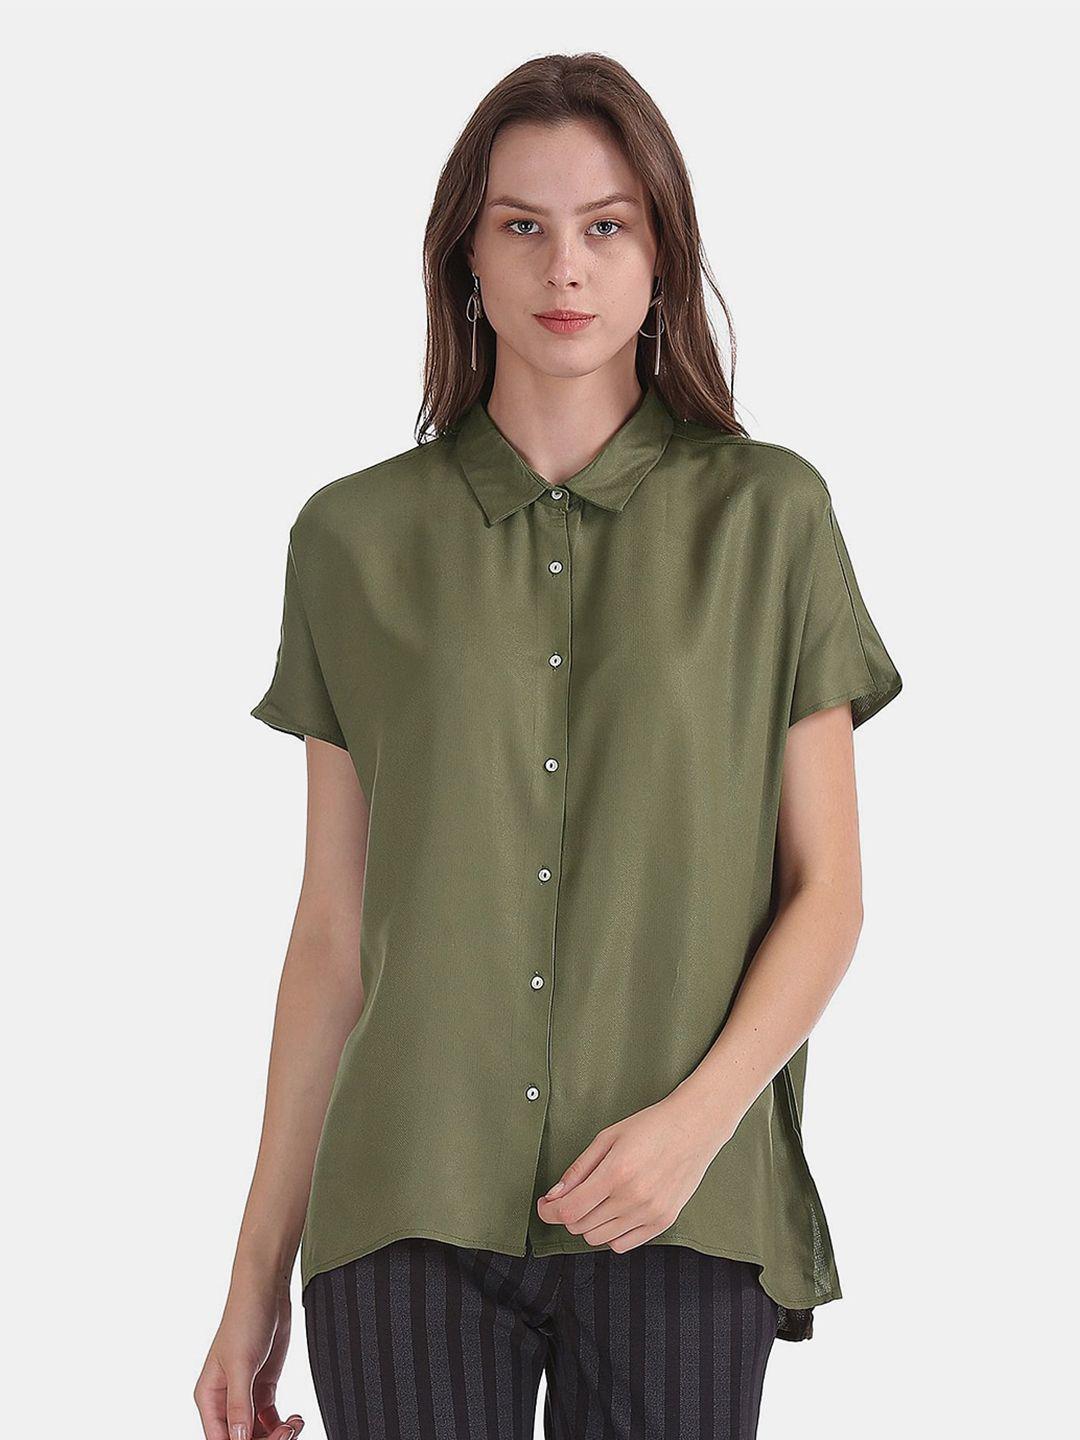 v-mart women regular casual cotton shirt